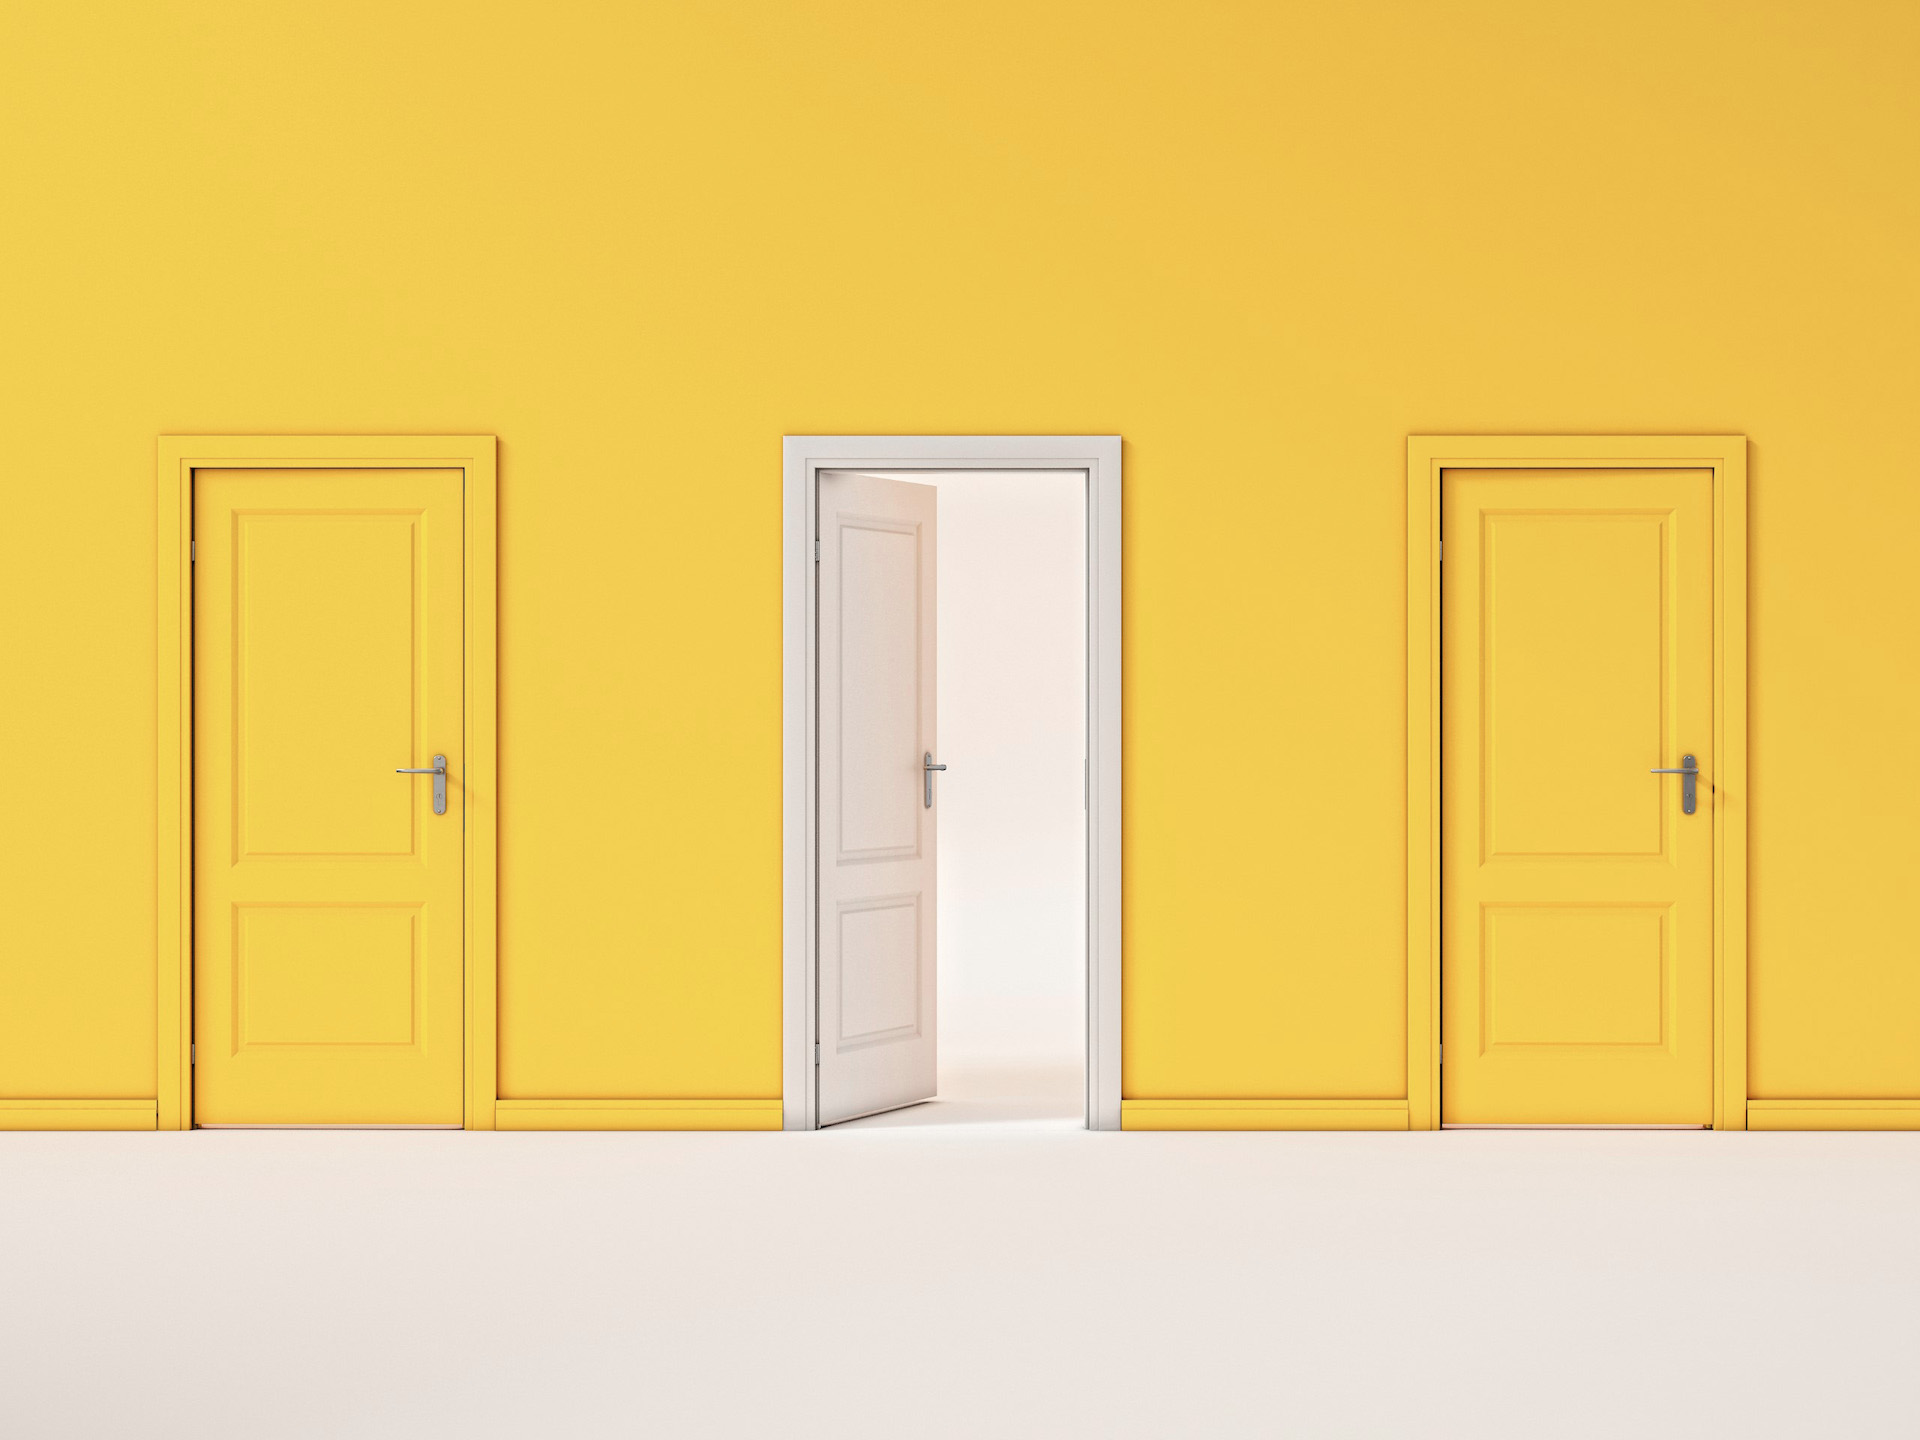 An open white door between two closed yellow doors.